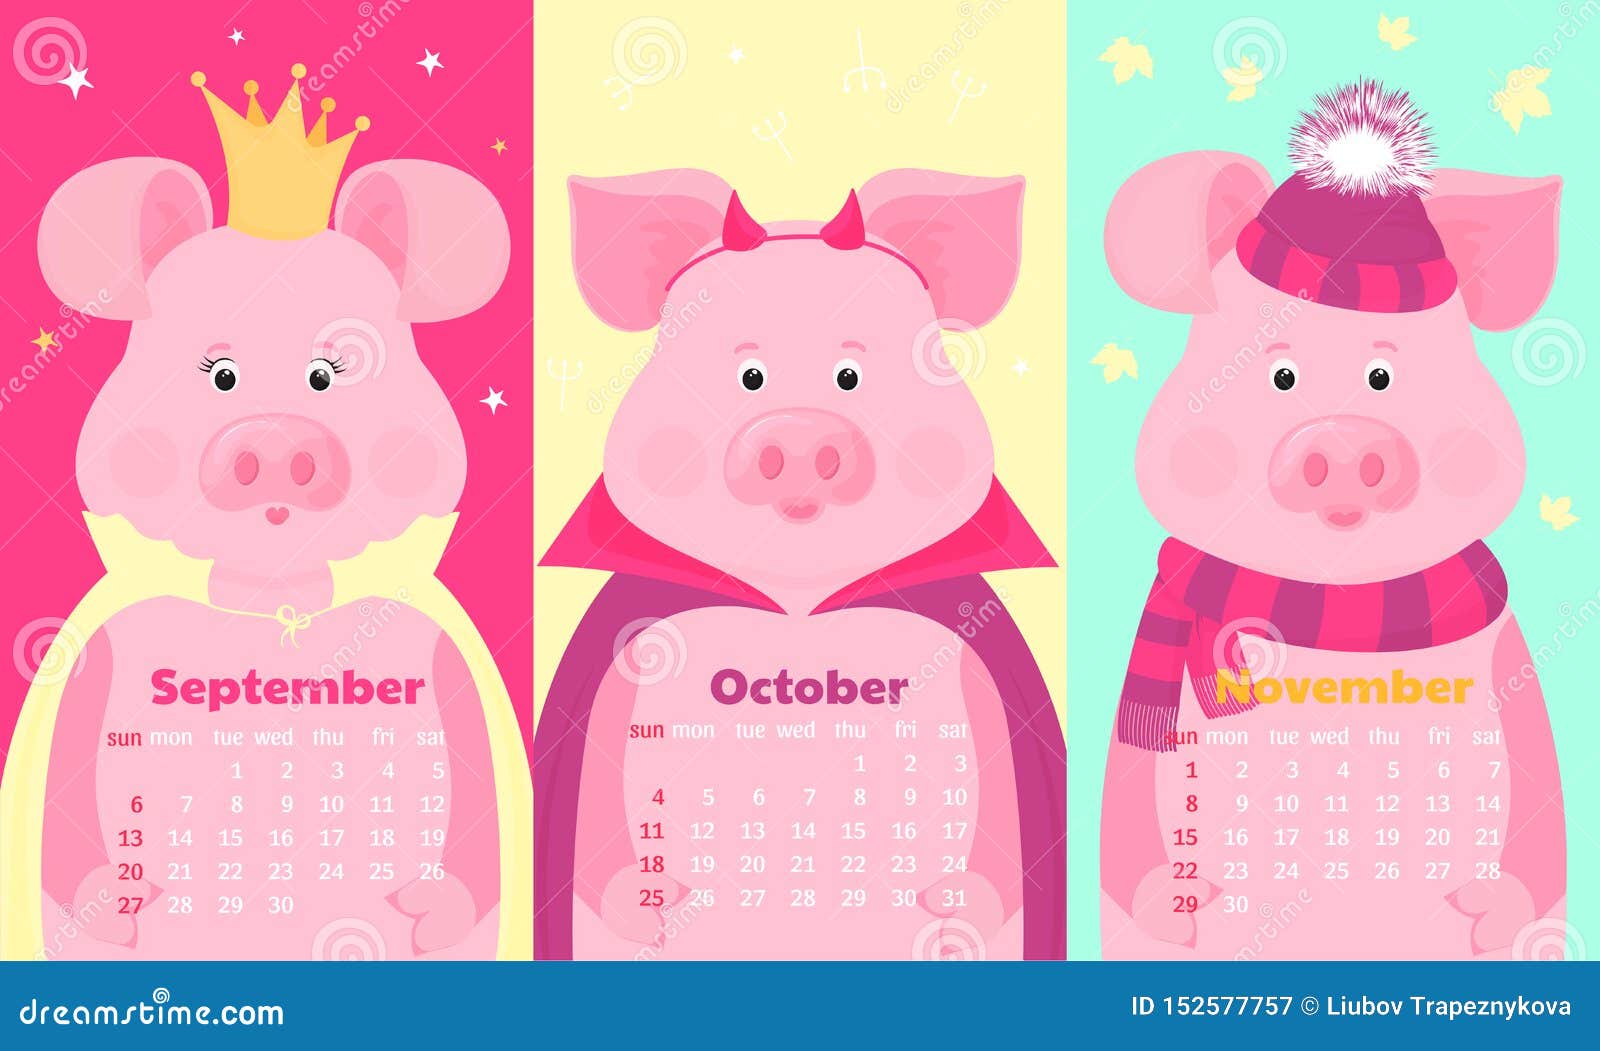 在帽子和围巾的逗人喜爱的猪 在冠 在万圣节服装r 月度日历年11月9月 10月 向量例证 插画包括有月度日历年11月9月 10月 在帽子和围巾的逗人喜爱的猪 在冠 在万圣节服装